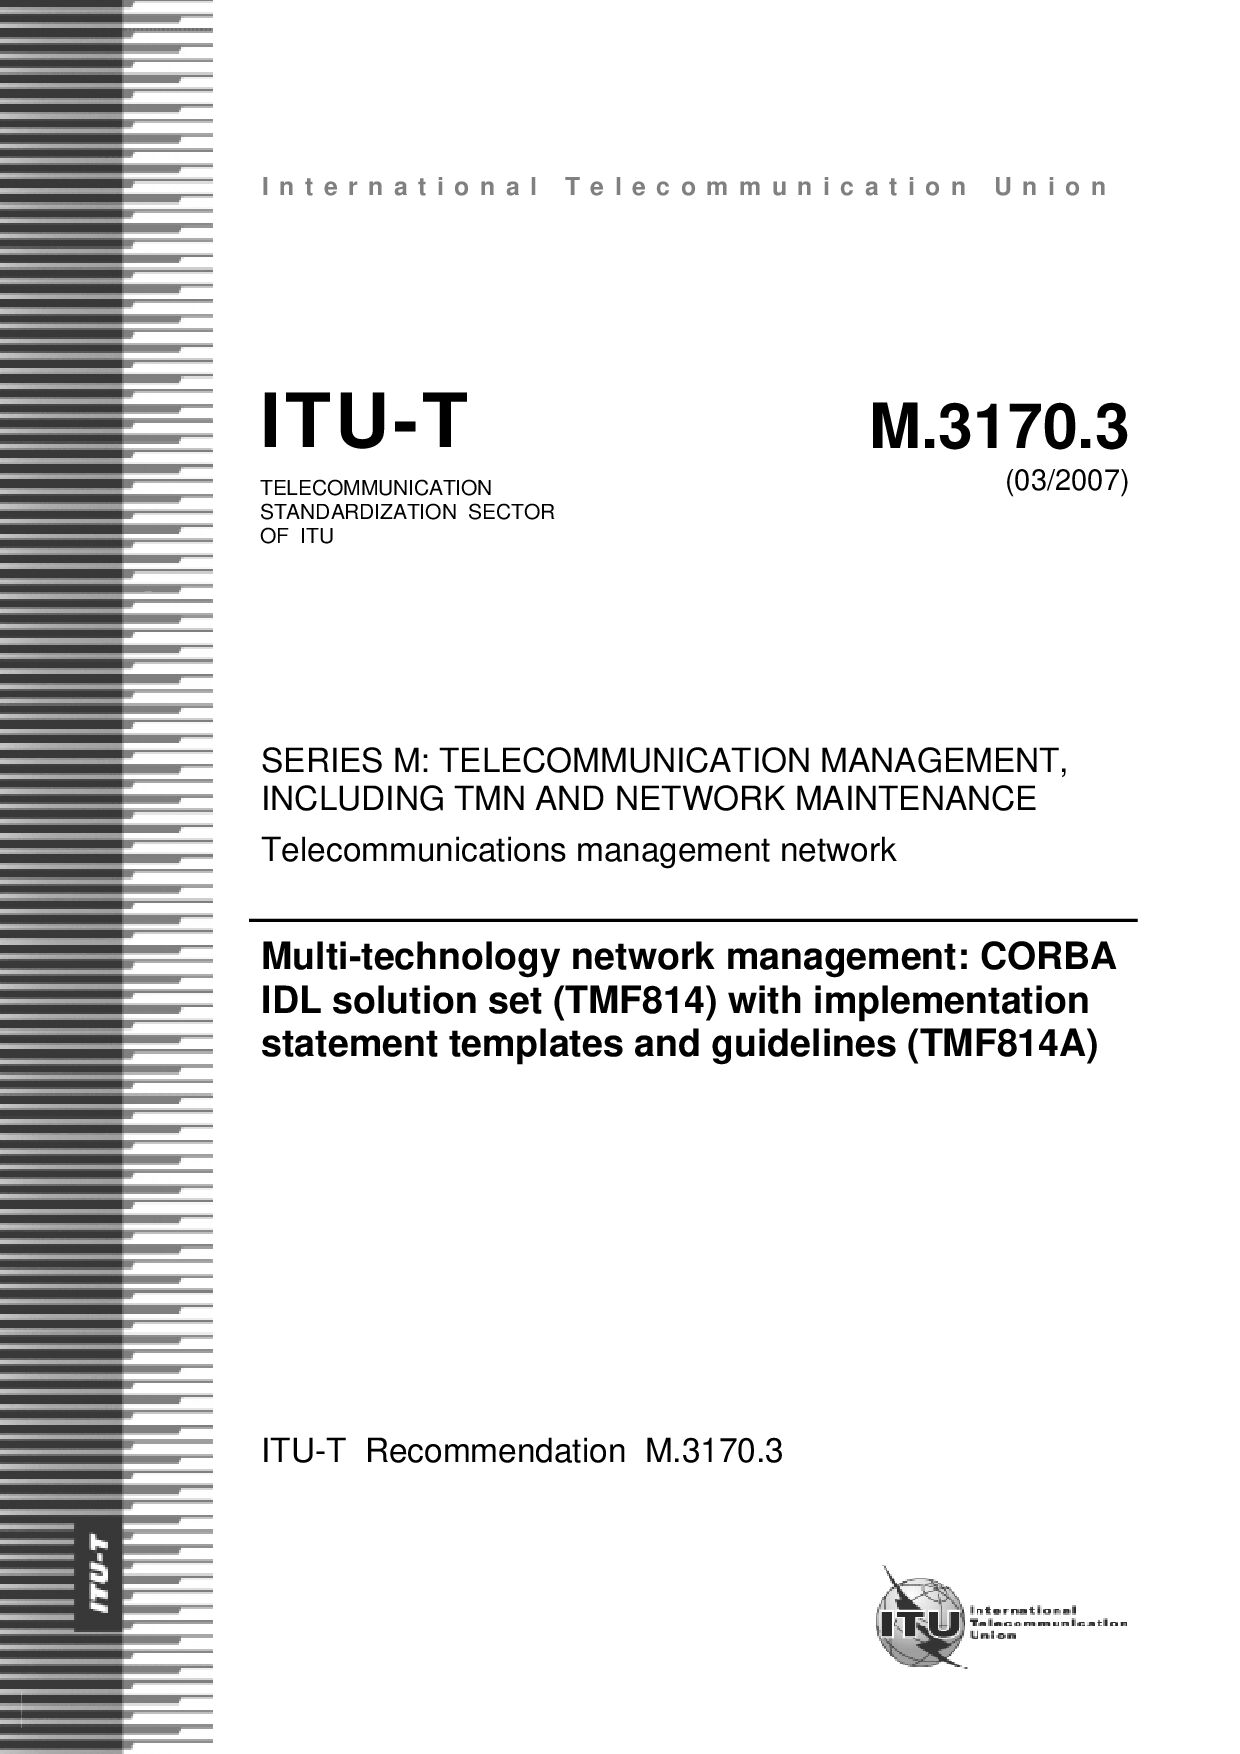 ITU-T M.3170.3-2007